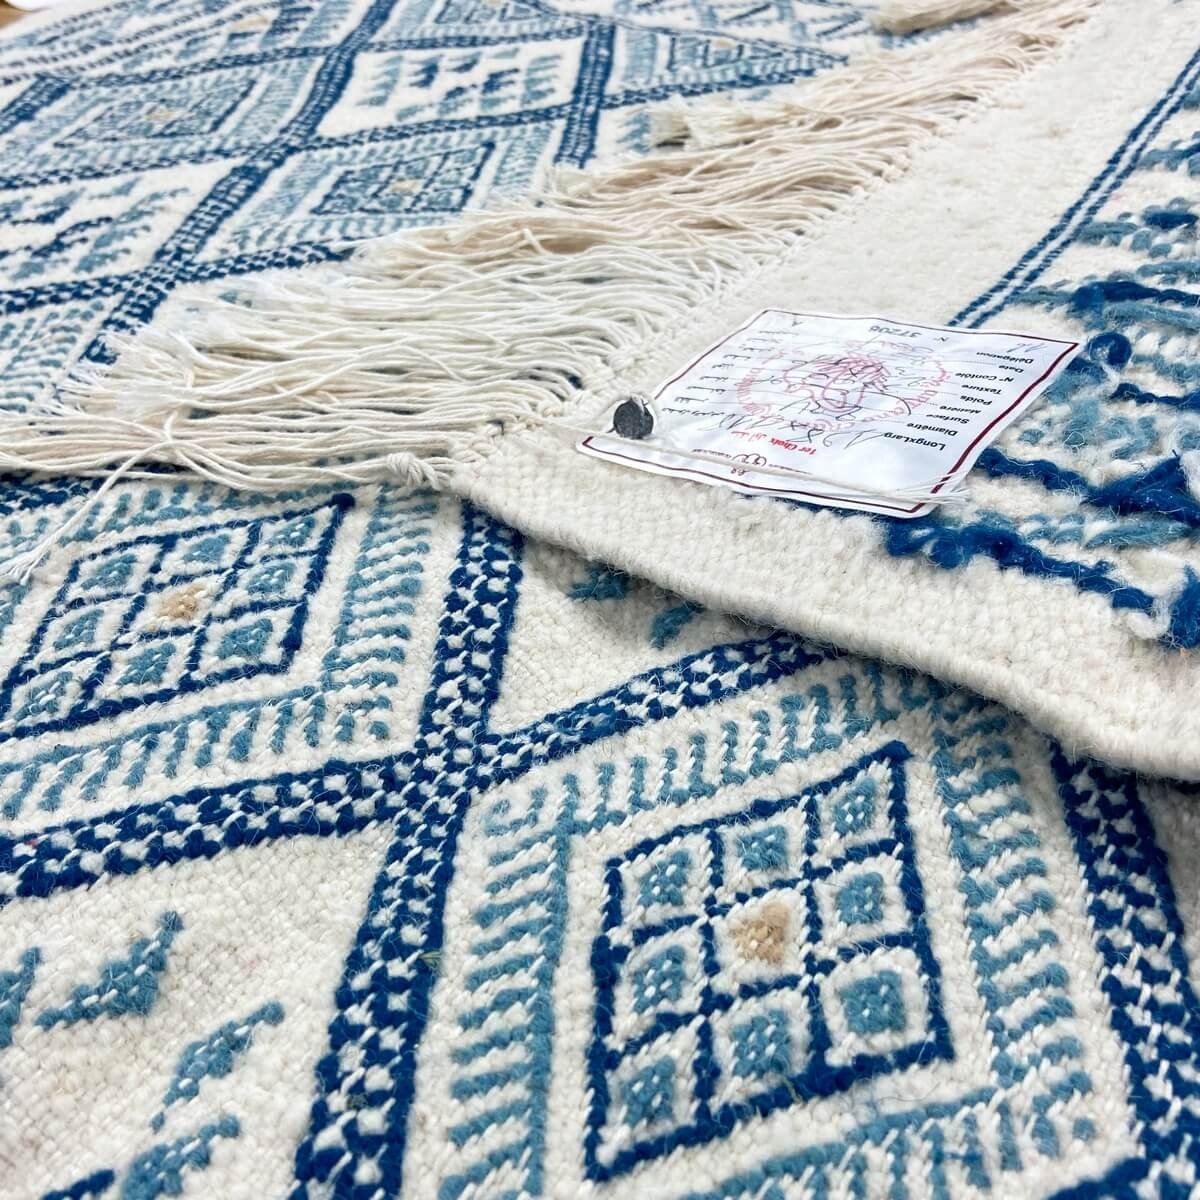 Berber Teppich Teppich Margoum Marsa 120x200 Blau/Weiß (Handgefertigt, Wolle, Tunesien) Tunesischer Margoum-Teppich aus der Stad